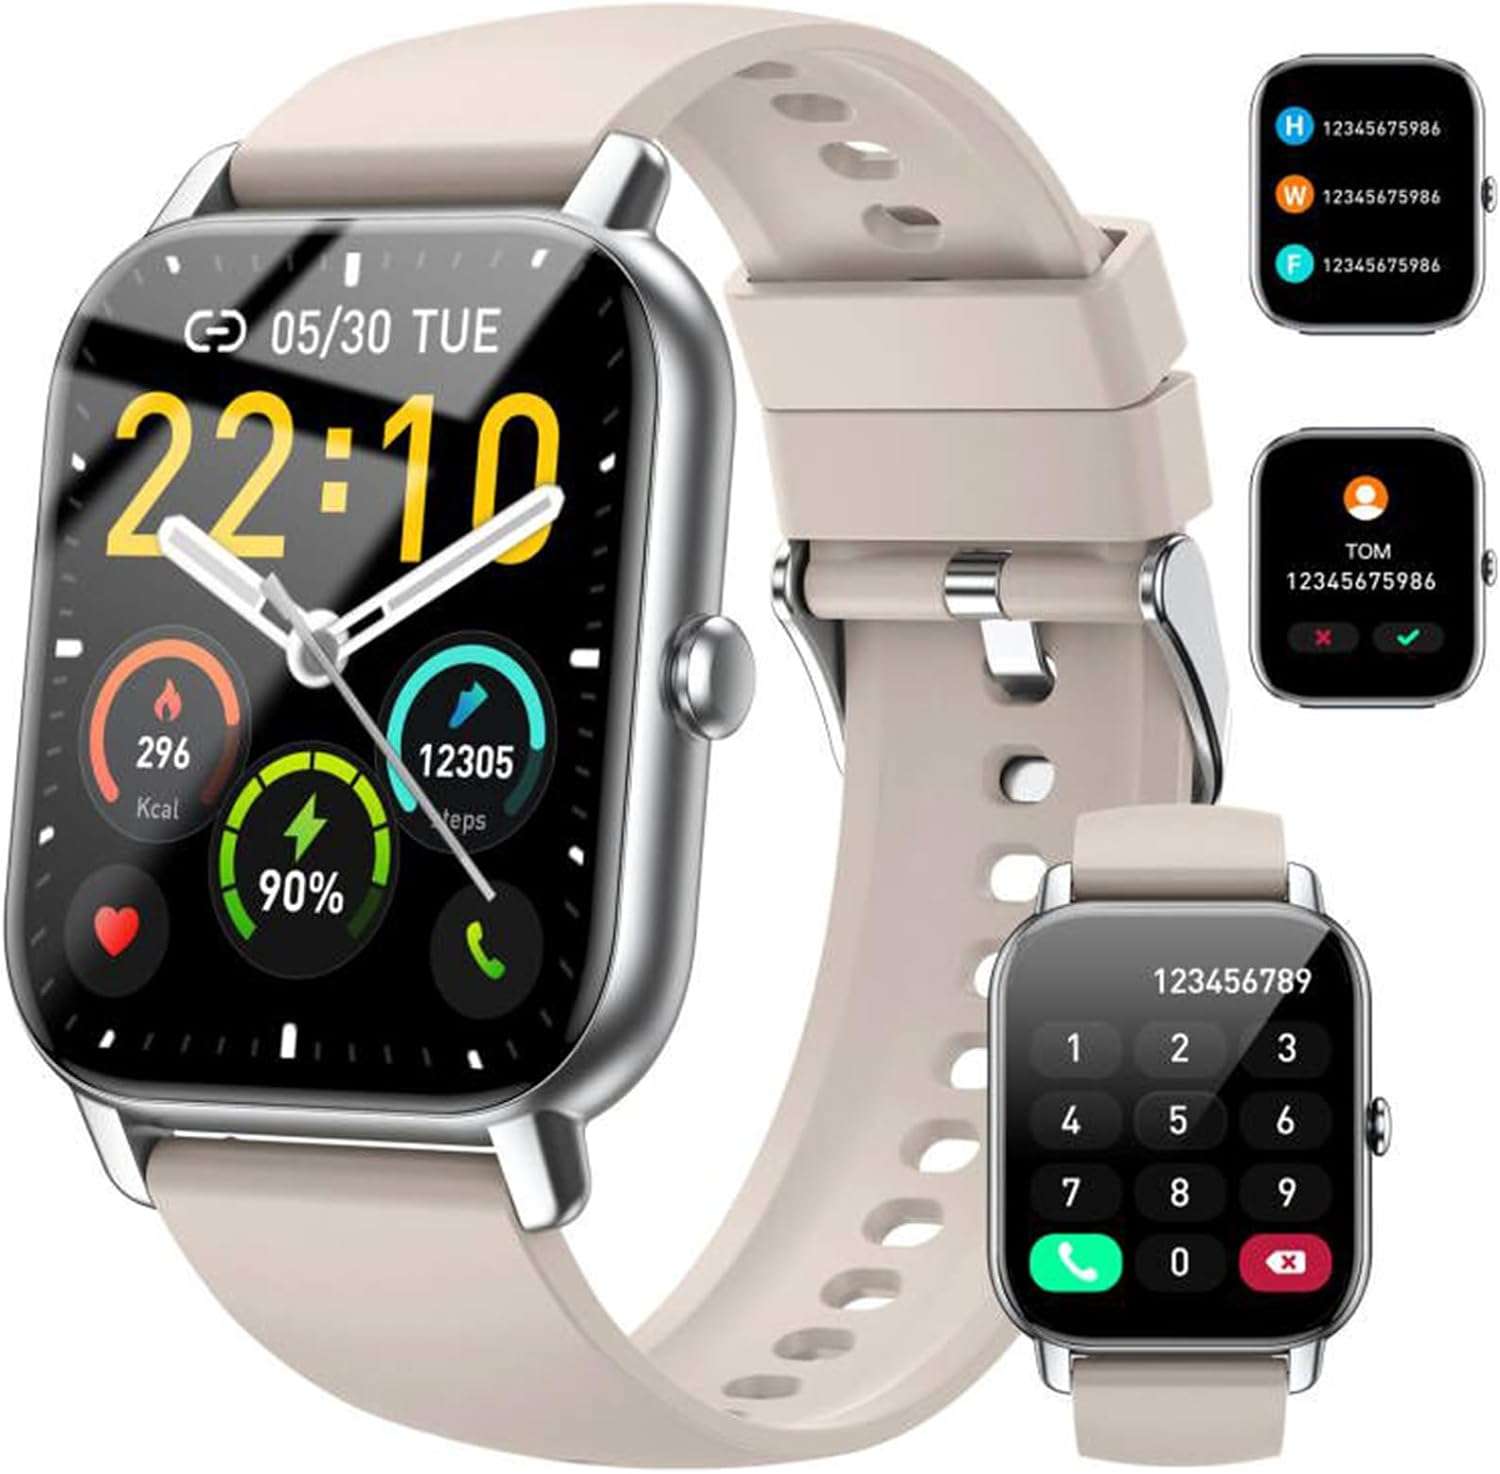 Este super smartwatch está à venda na Amazon: preço reduzido em 64%